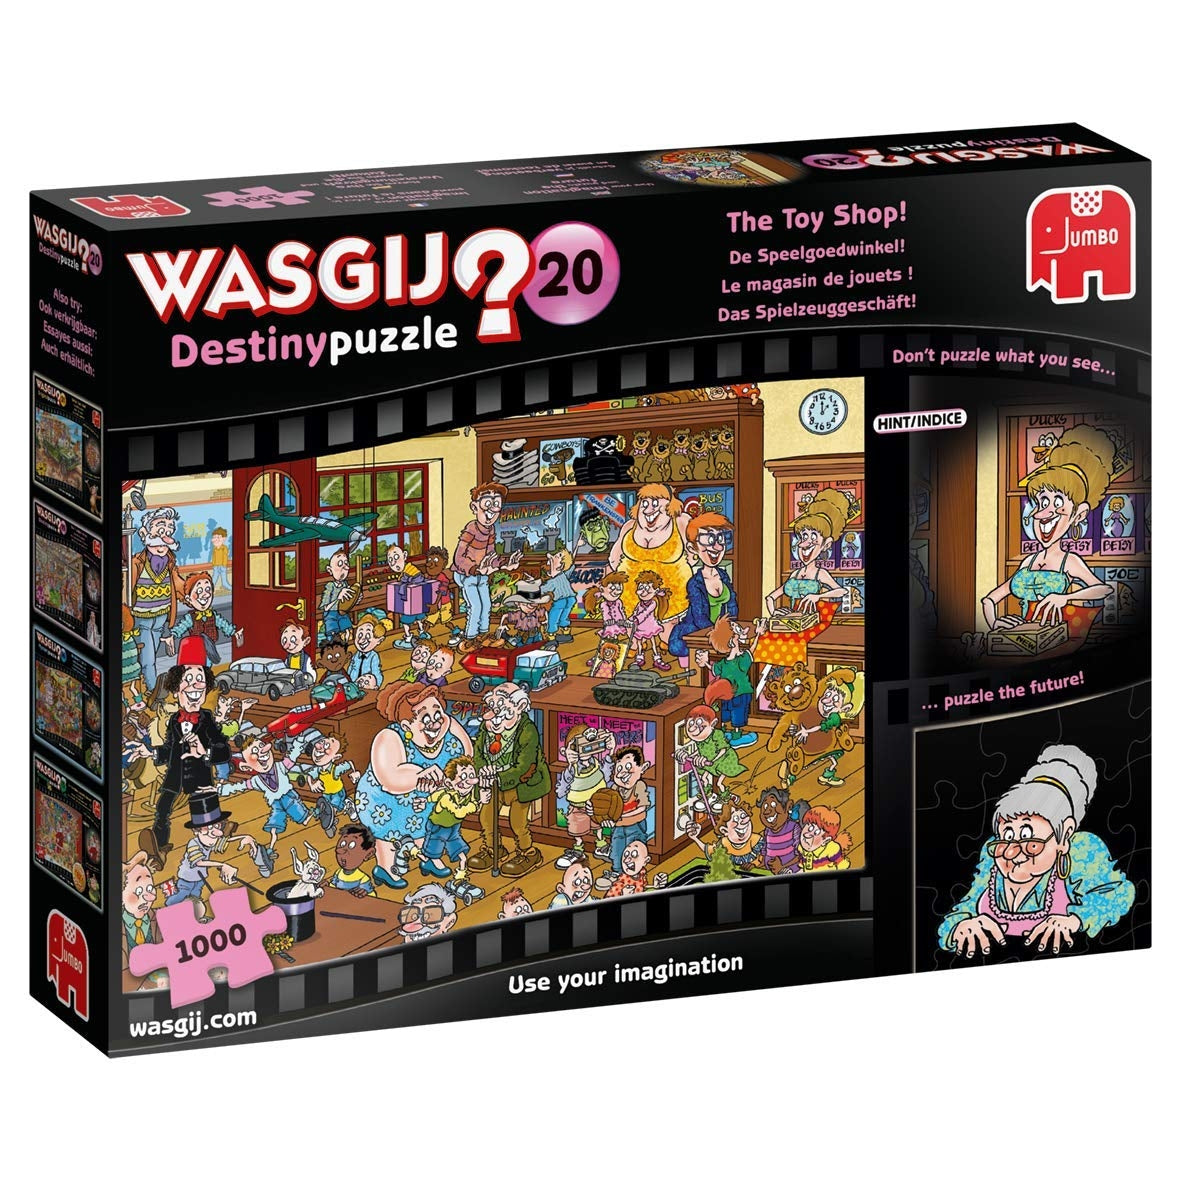 Wasgij Destiny 20 - The Toy Shop! - 1000 Piece Jigsaw Puzzle